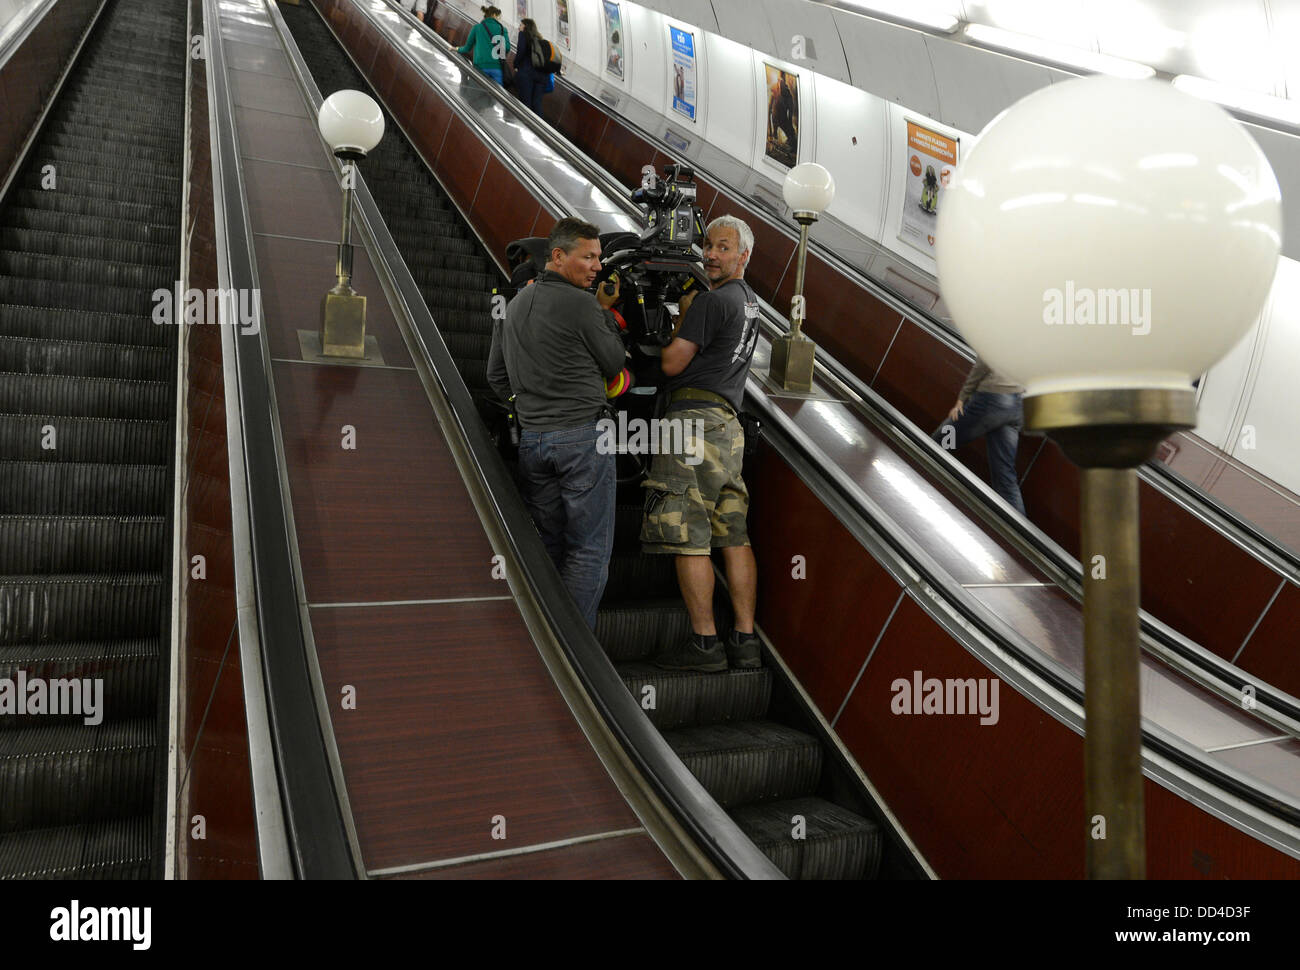 Dreharbeiten zum Film uns Hollywood Kind 44 abgebildet auf der Station Andel der u-Bahn in Prag, Tschechien am 23. August 2013. Film Kind 44 ist unter der Regie von Daniel Espinosa und produziert von Ridley Scott. (CTK Foto/Michal Krumphanzl) Stockfoto